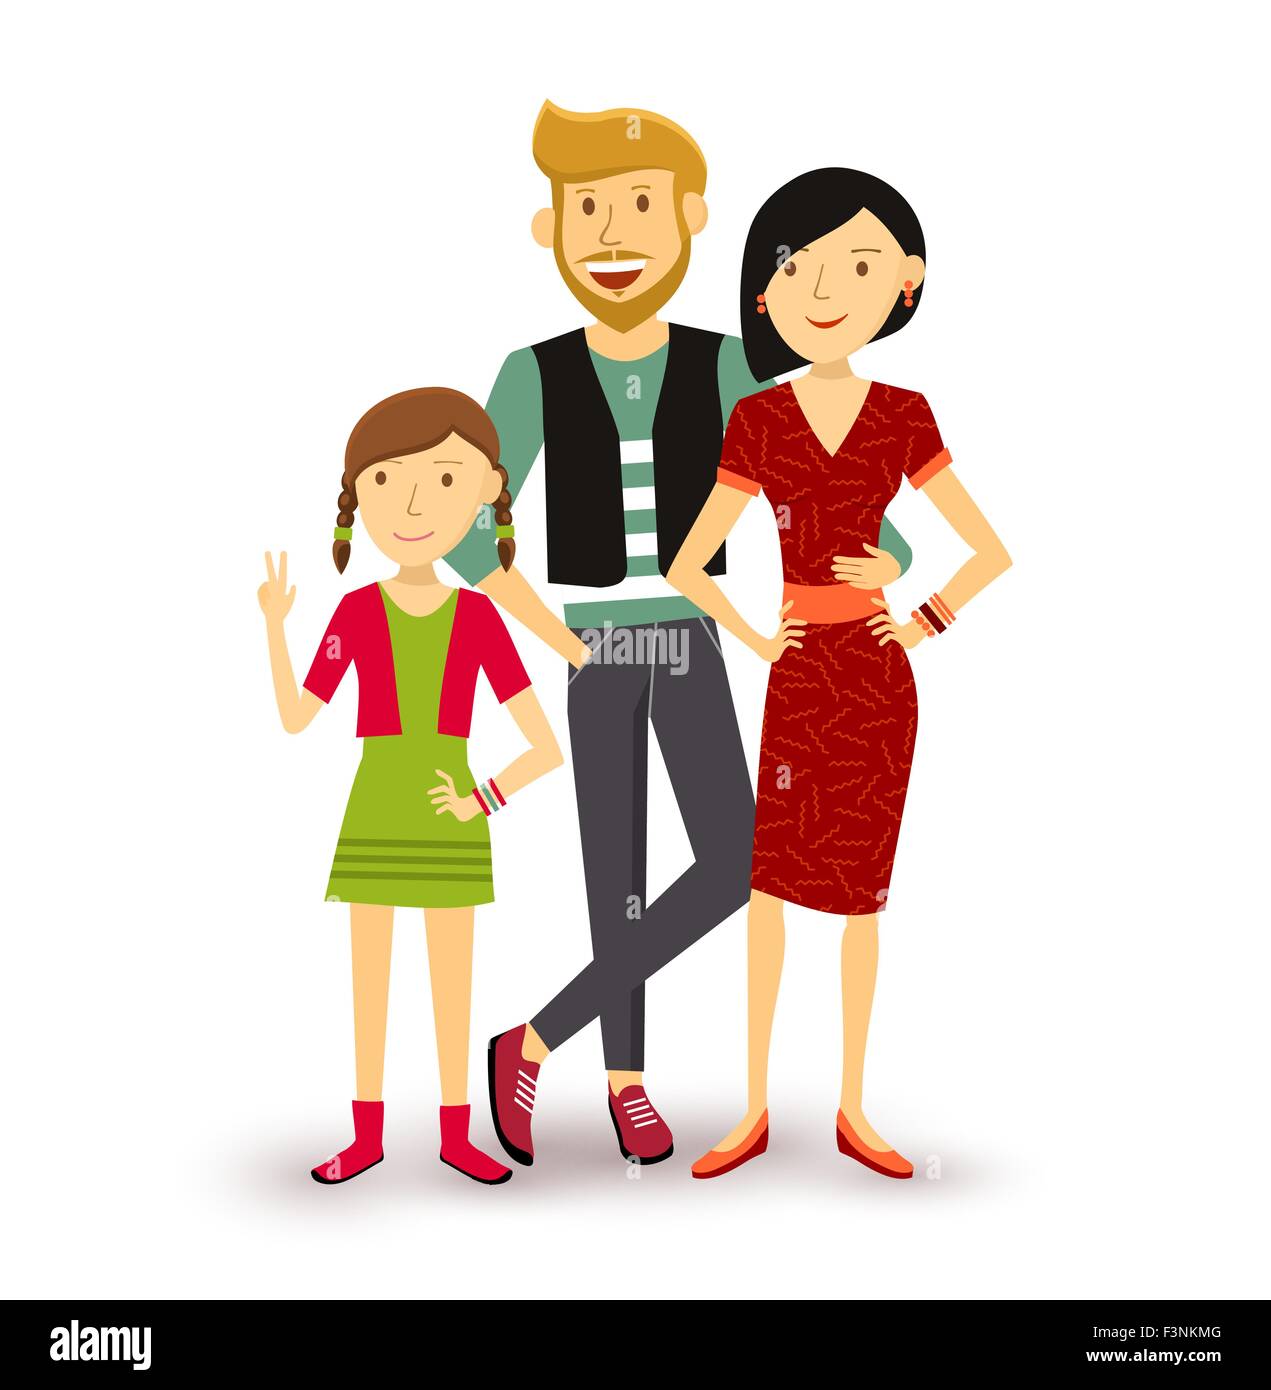 Menschen Sammlung: ein Kind glücklich Familiengruppe Generation mit Vater, Mutter und junge Tochter in flachen Stil Abbildung. Stock Vektor